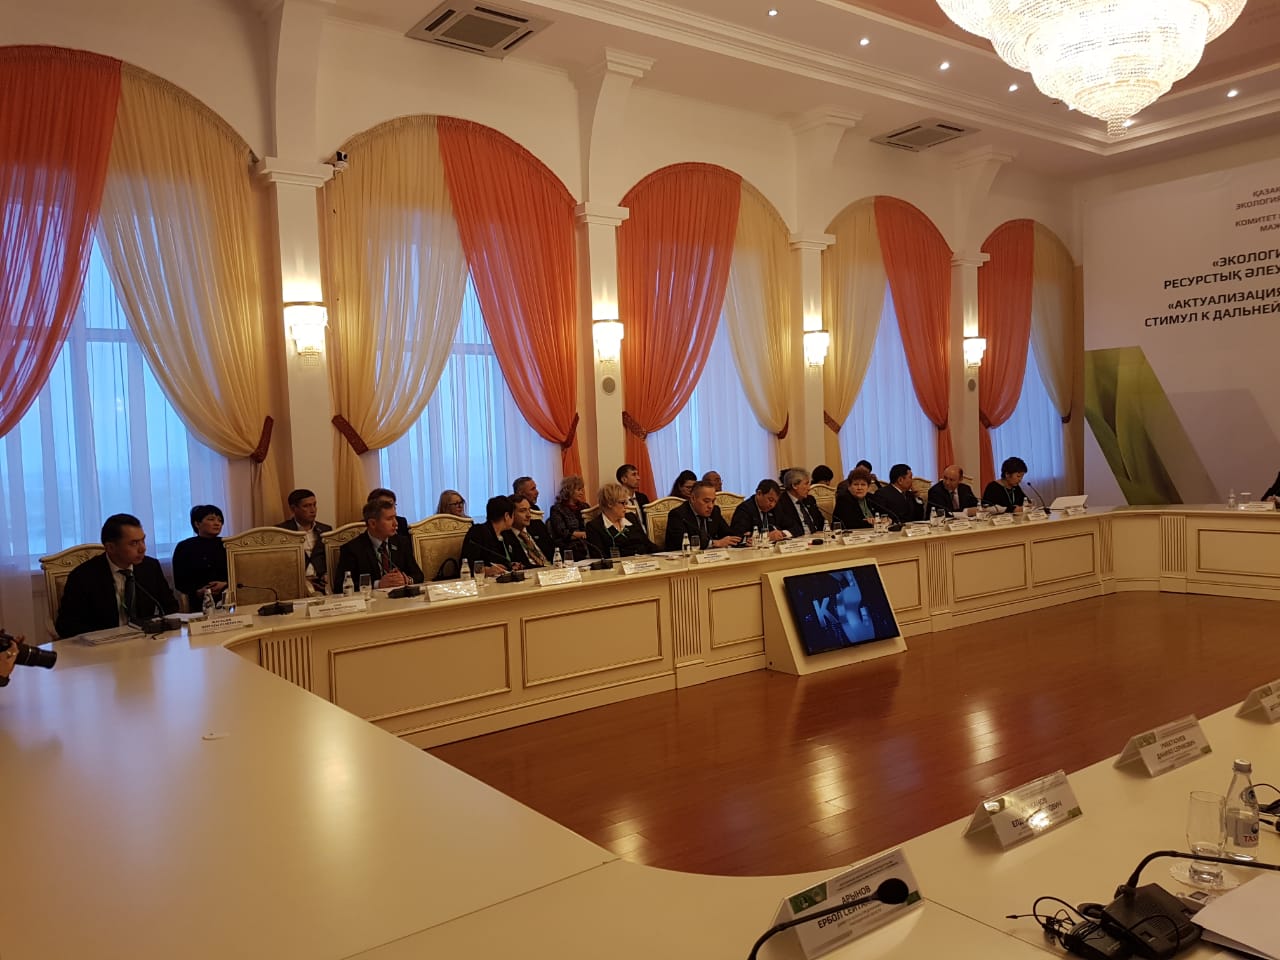 Выездное заседание Комитета в  г. Павлодар, на тему: "Актуализация экологического законодательства - стимул к дальнейшему развитию ресурсного потенциала"